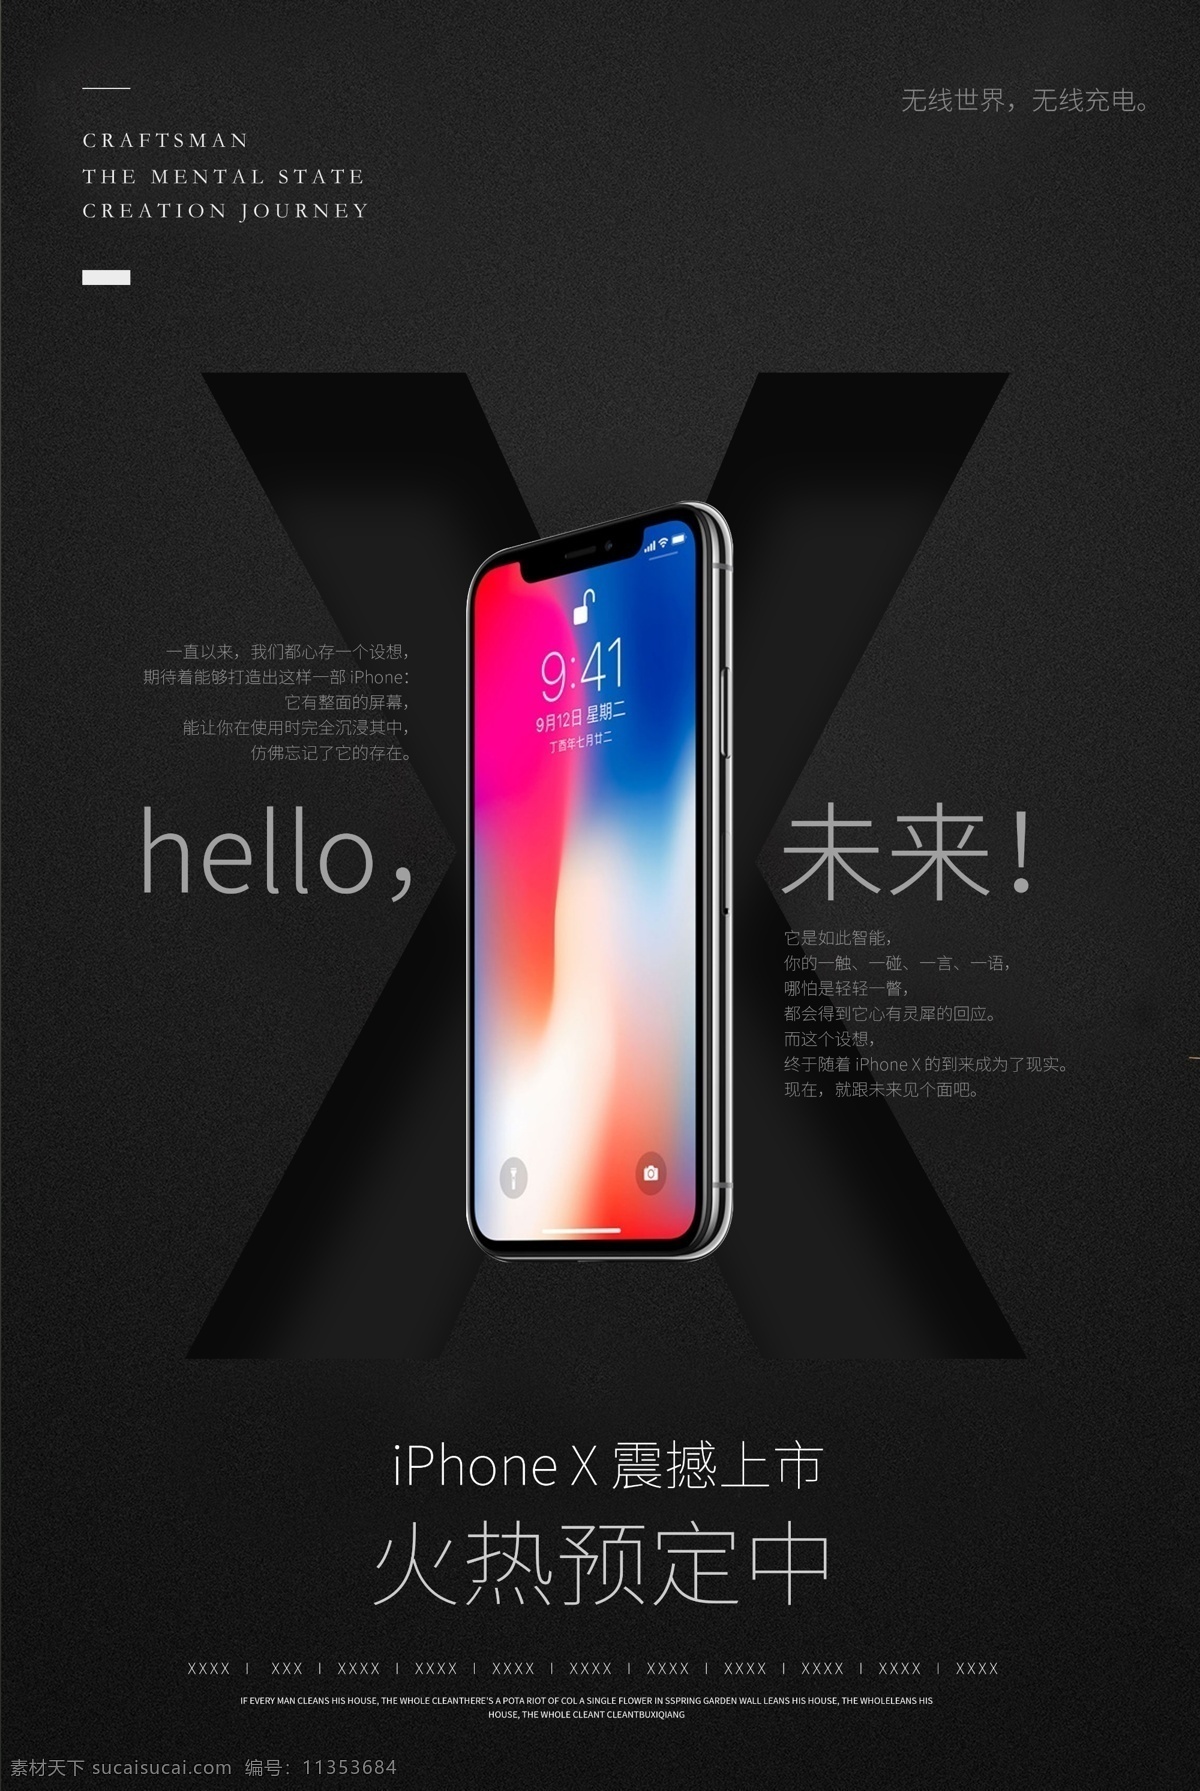 时尚 创意 iphonex 预售 宣传海报 iphone8 iphonx psd模板 苹果 苹果8 苹果x